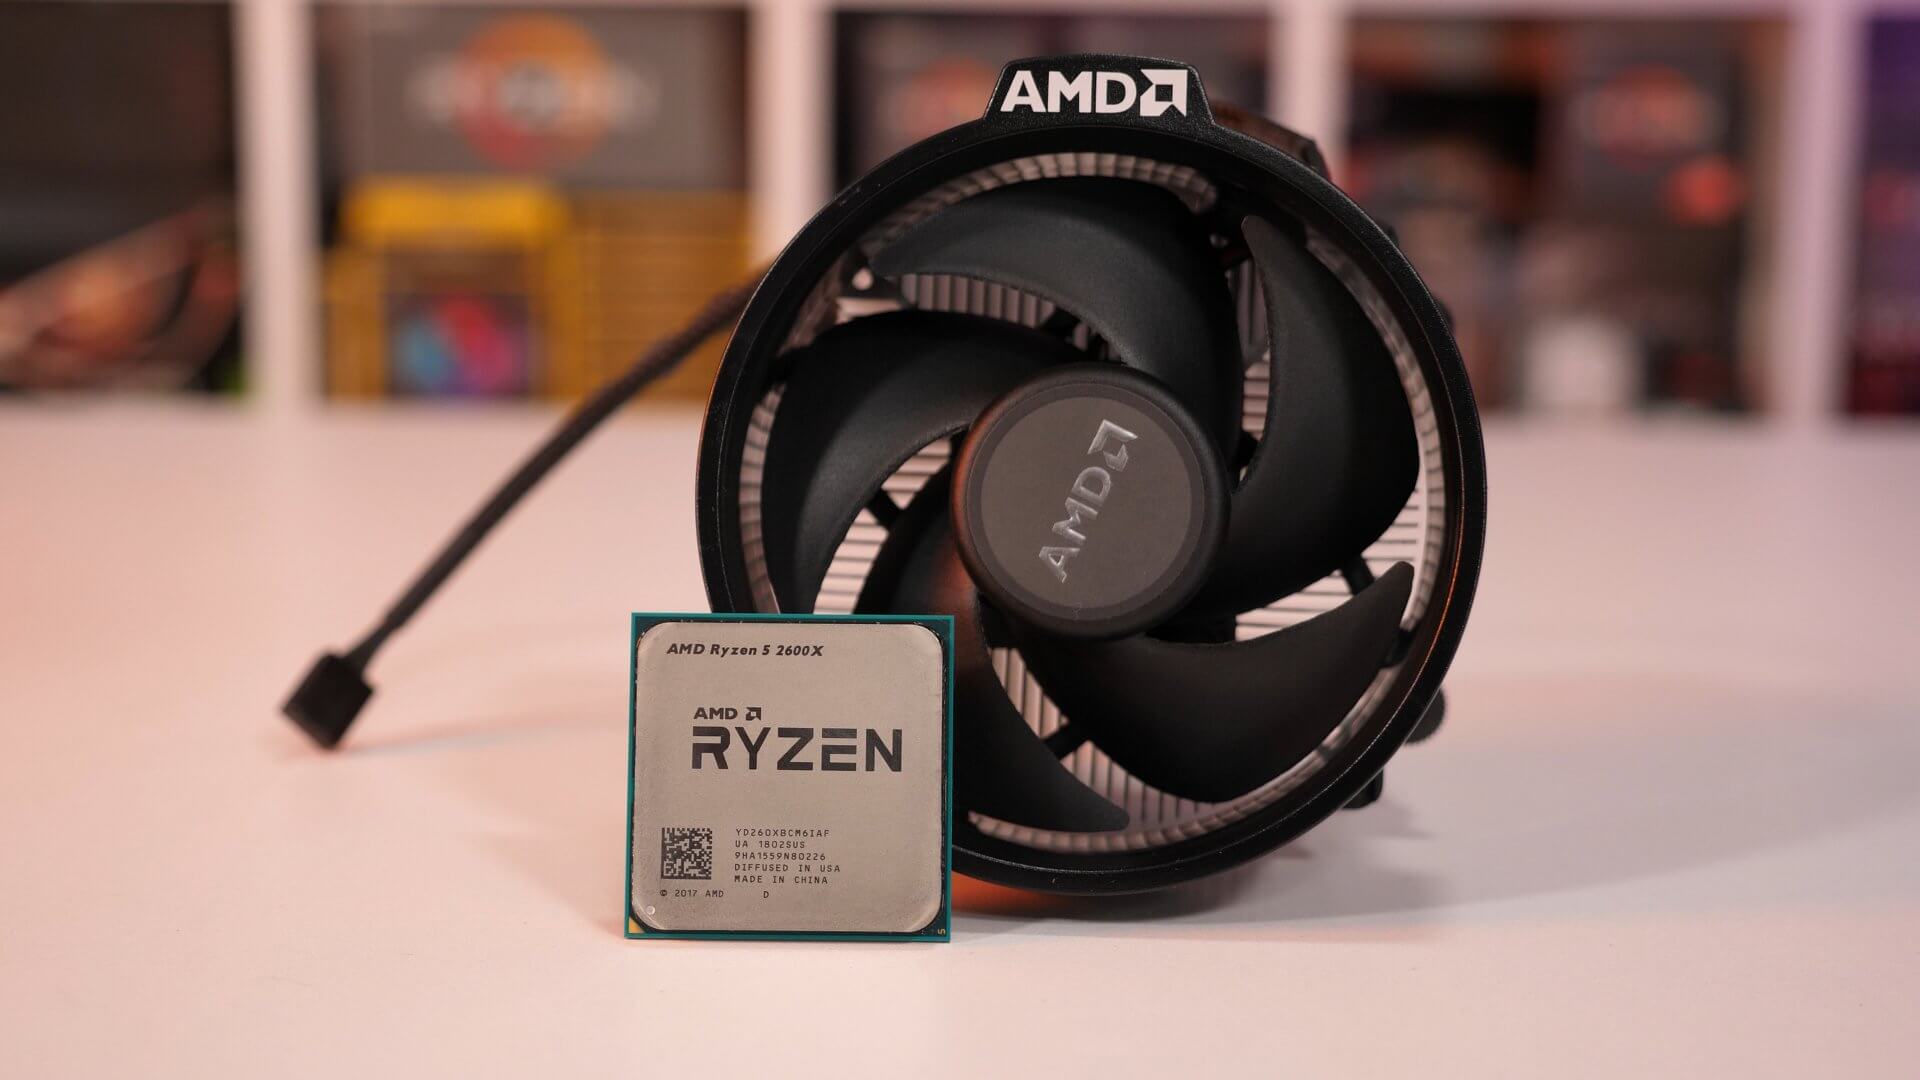 AMD Ryzen 7 2700X & Ryzen 5 2600X Review | TechSpot